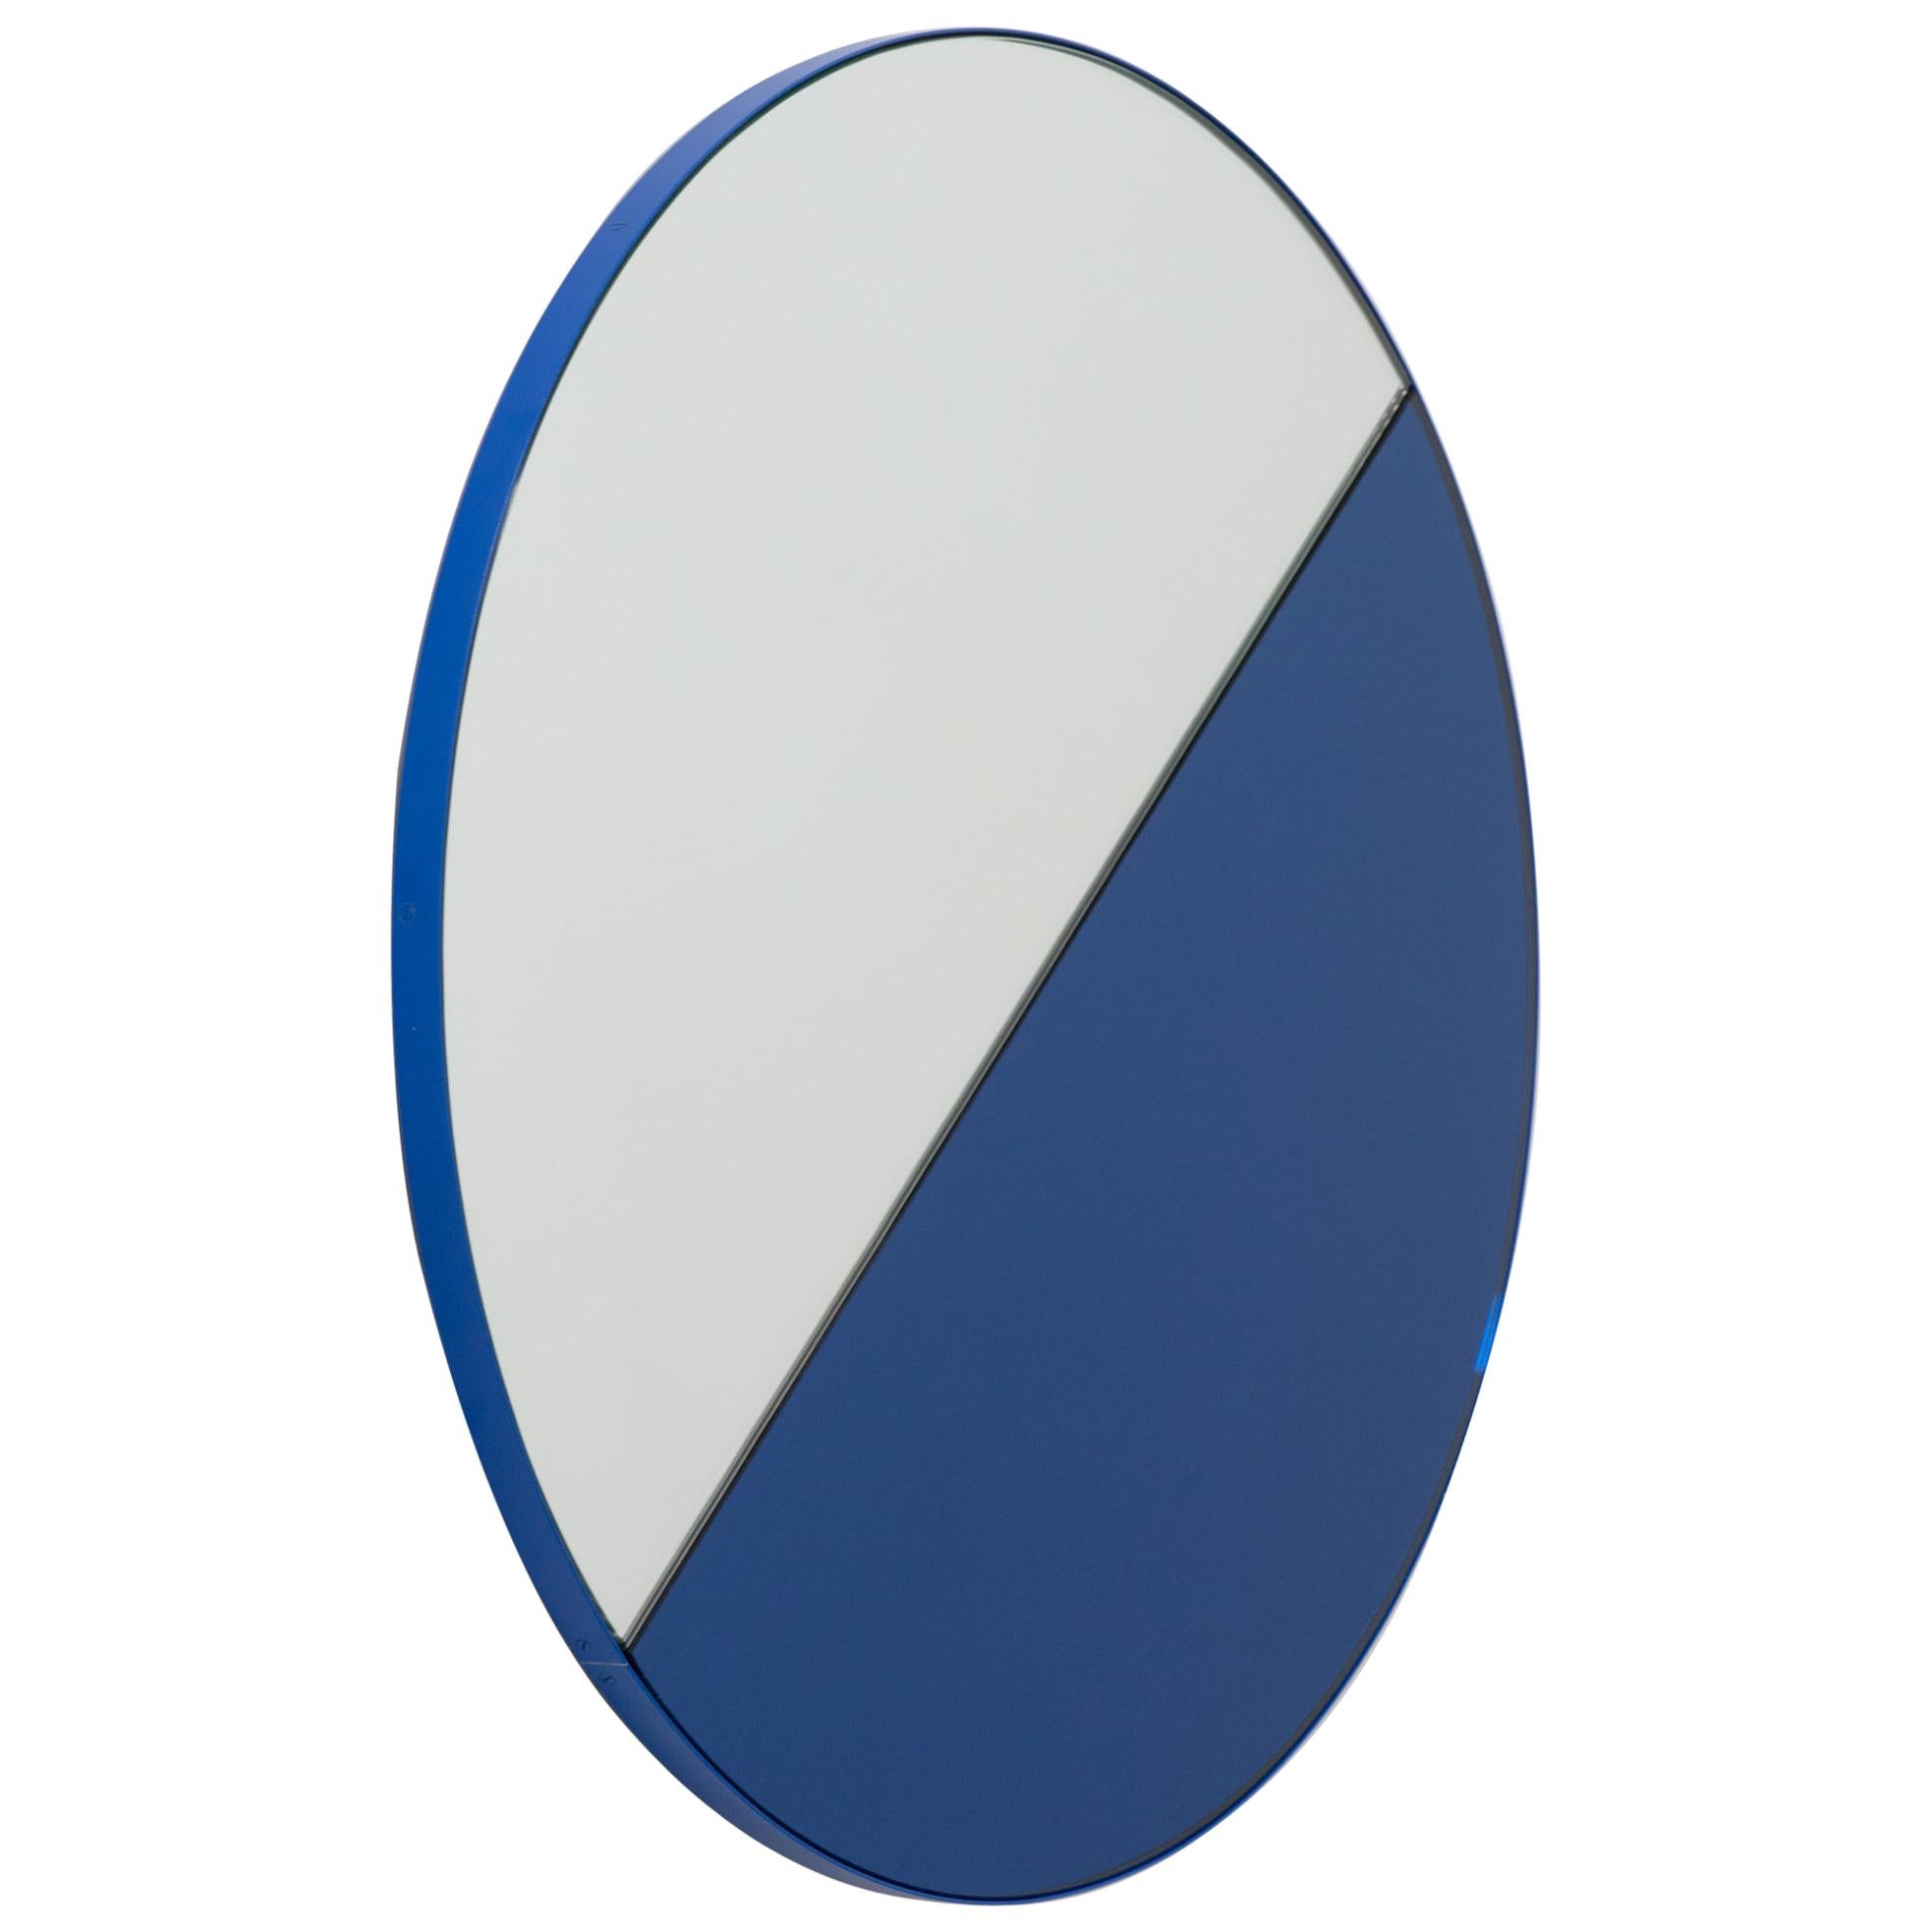 Orbis Dualis Miroir rond contemporain teinté bleu avec cadre bleu, petit